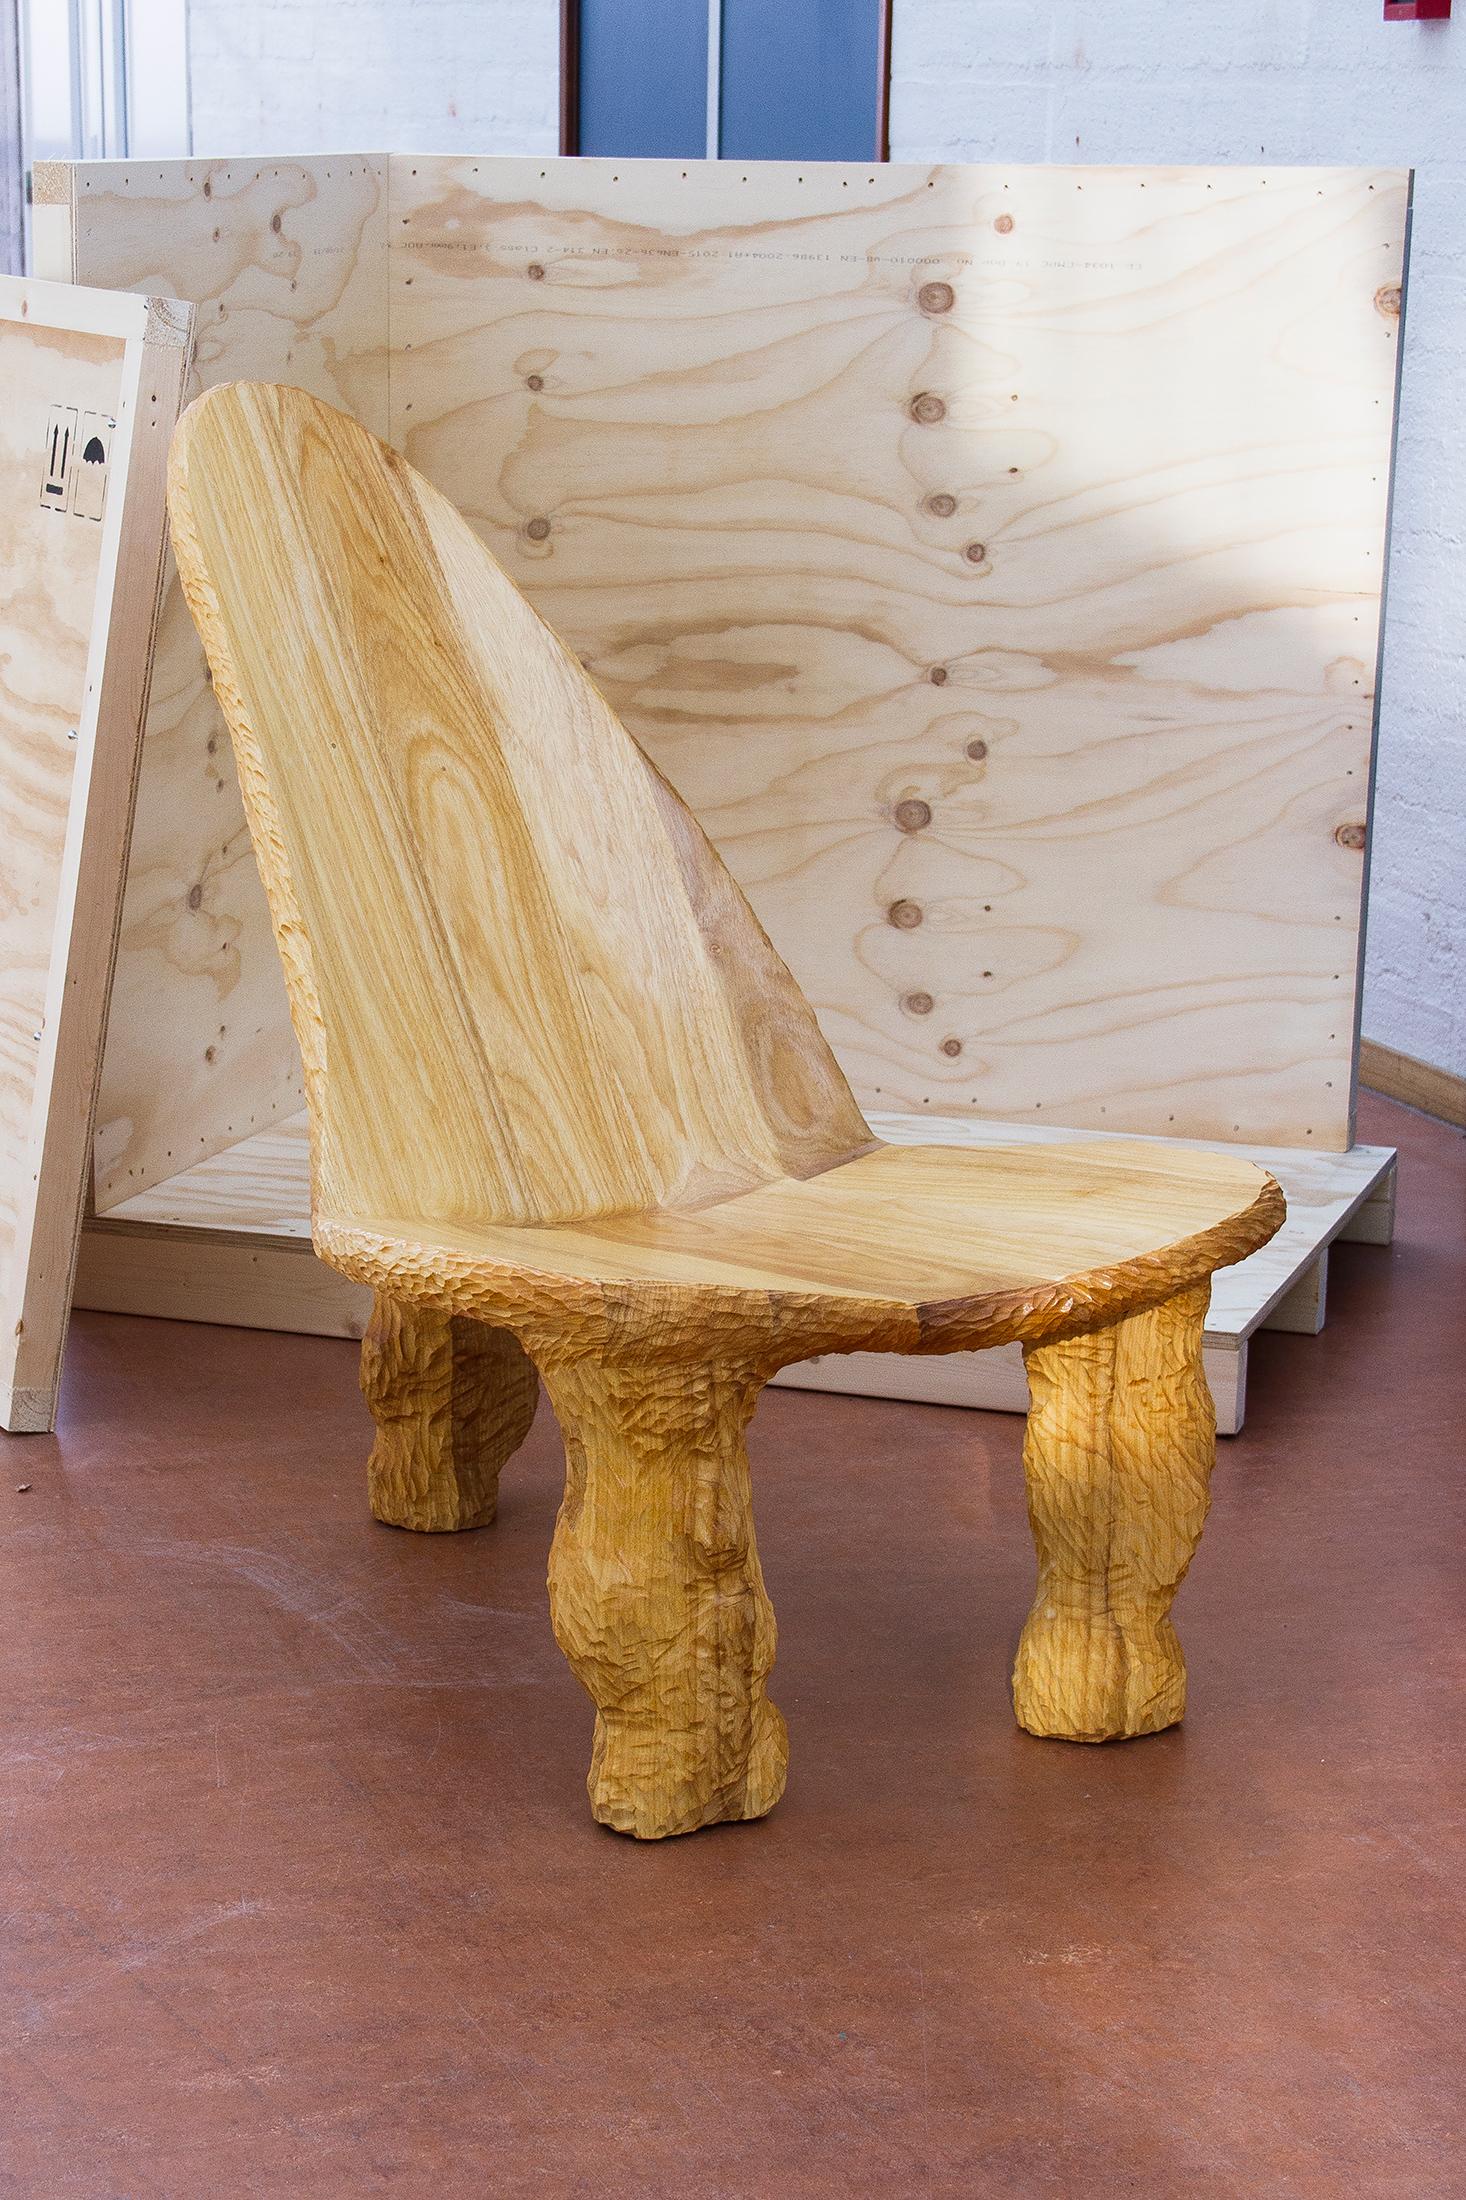 Voici la version en bois sculptée à la main de la chaise longue conçue et fabriquée par Tellurico Design Studio pour Emma Scully Gallery.

Personnalisation : 
Sur demande préalable, le Lounge Chair peut être personnalisé avec différents types de